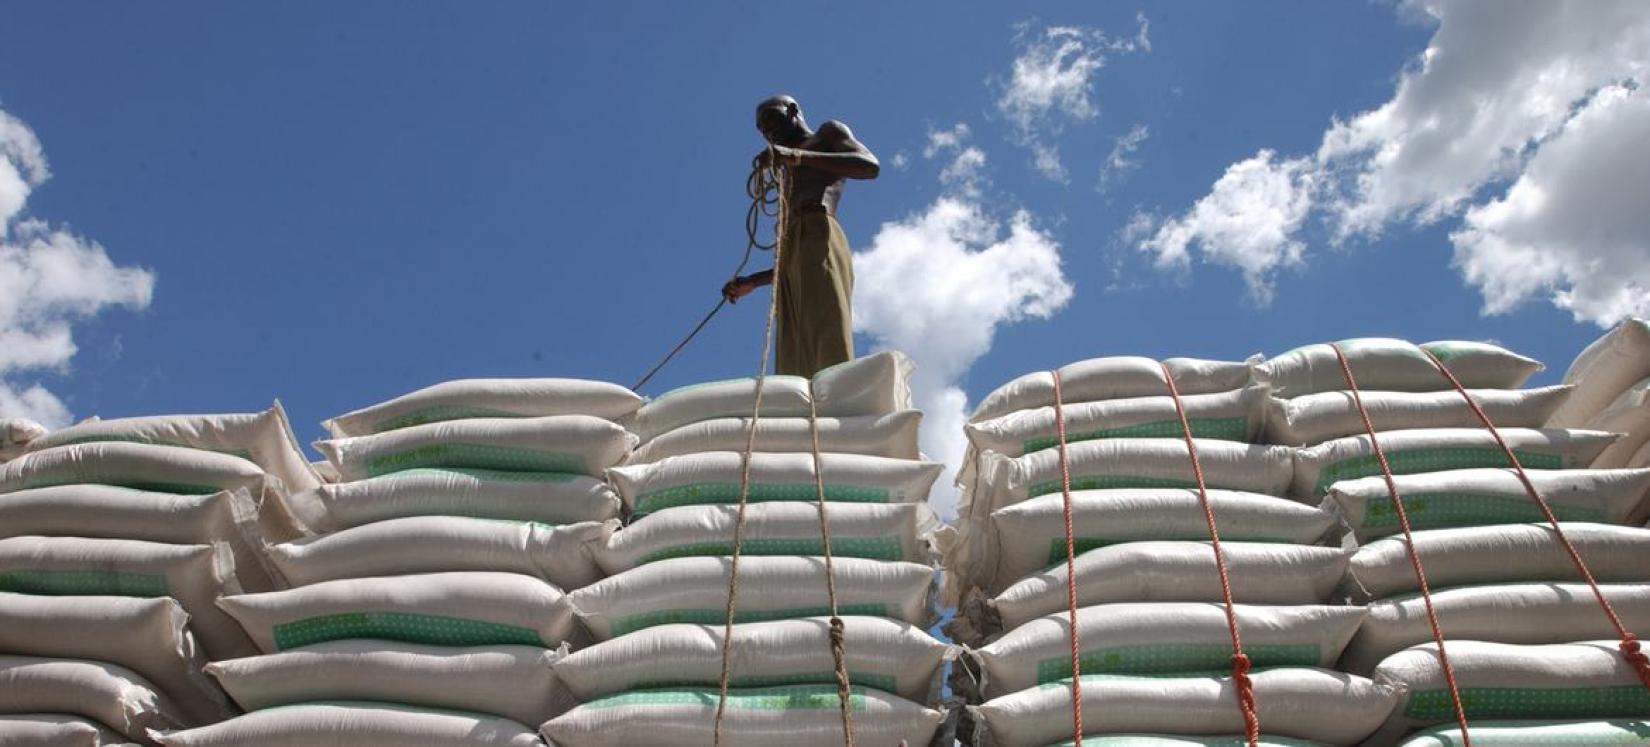 Trabalhador do porto de Dar Es Salaam carregando sacos de trigo em um caminhão, na Tanzânia.